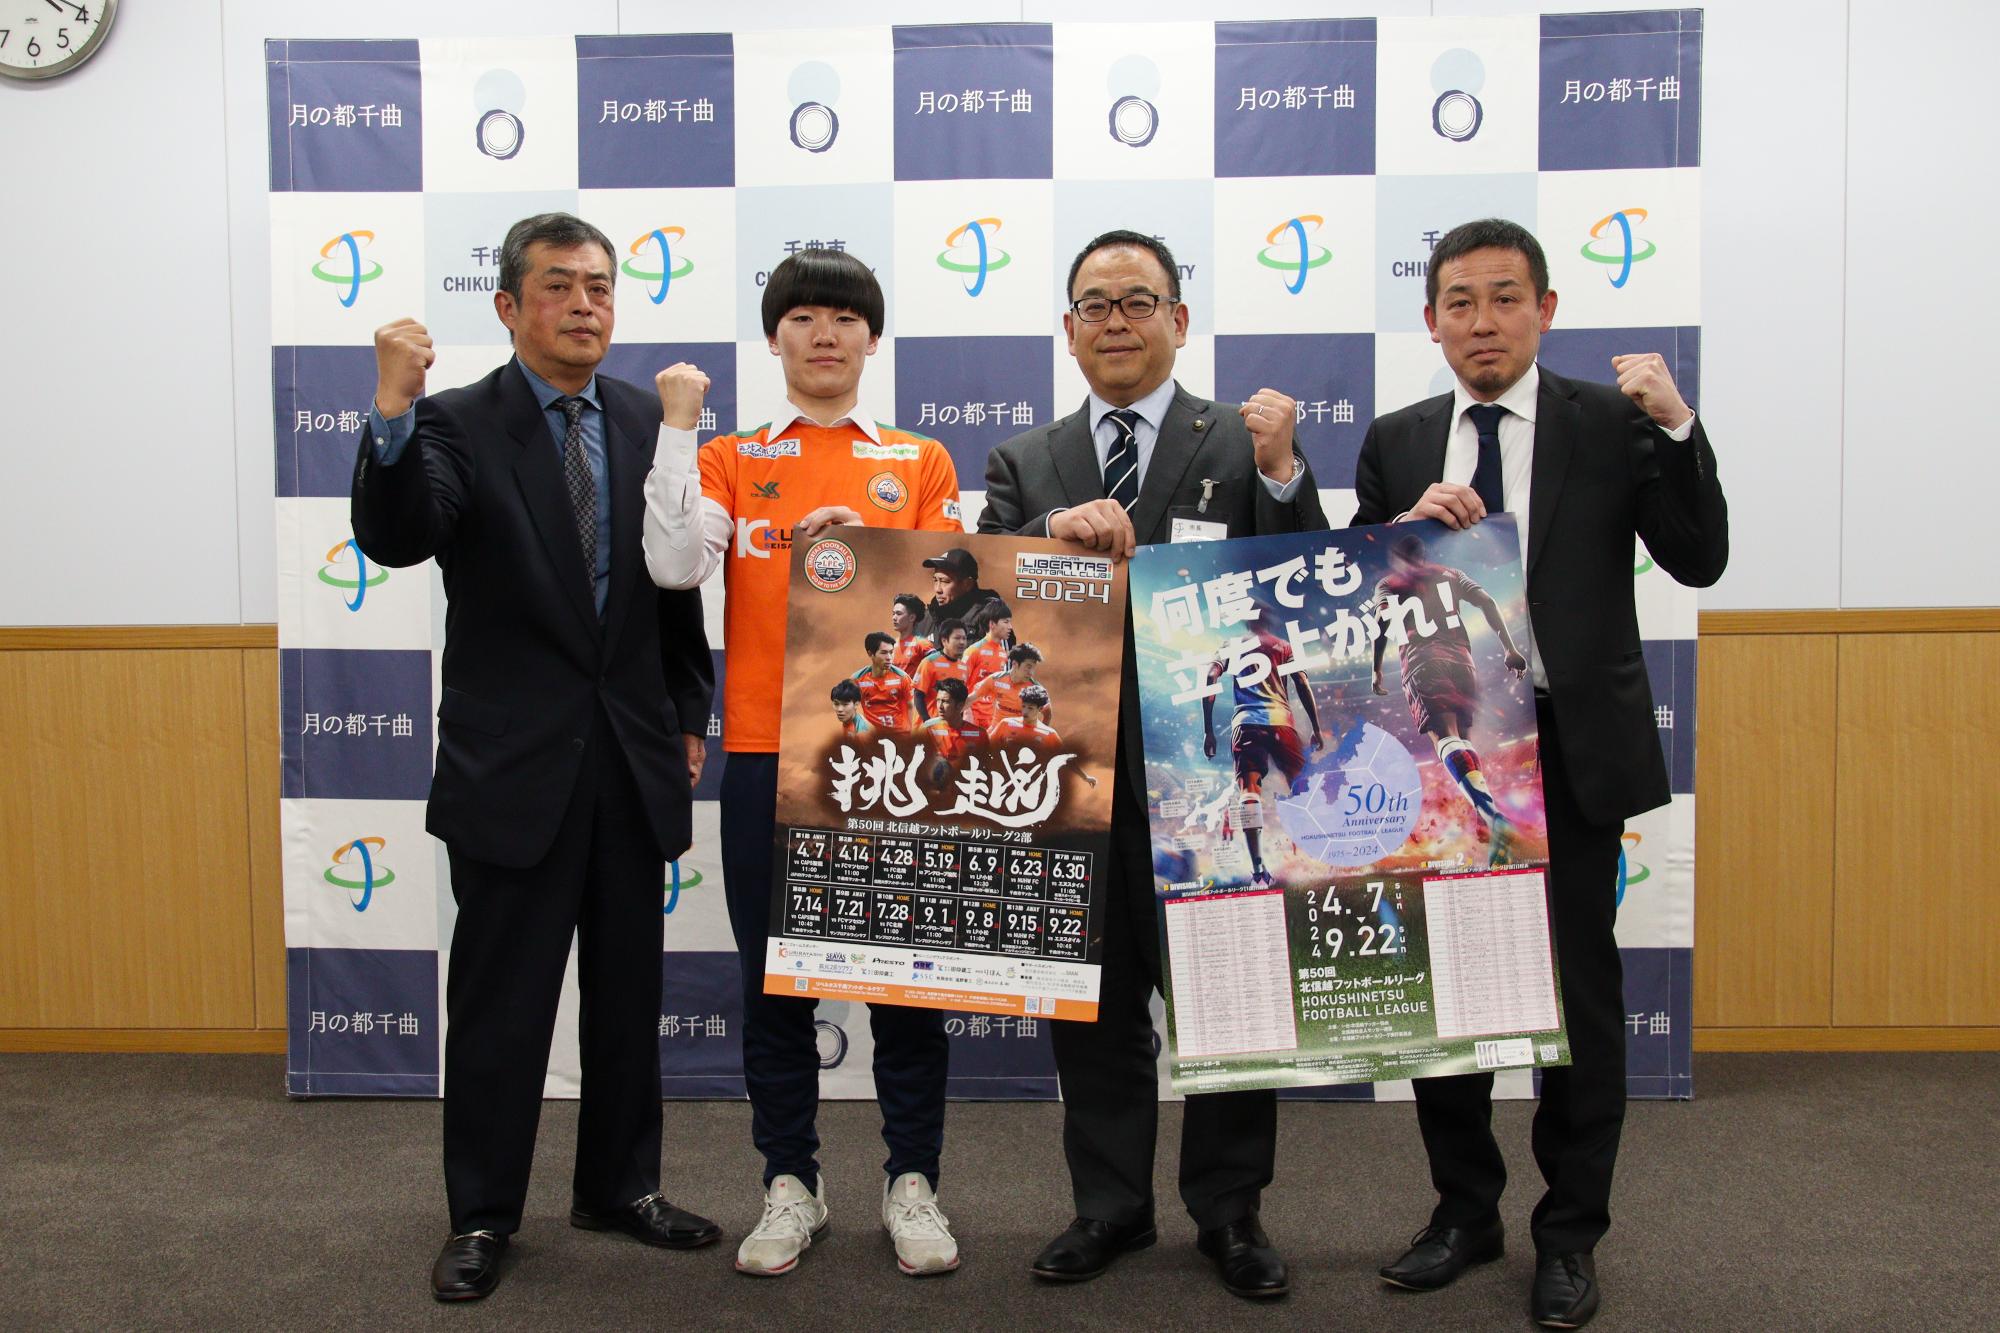 市長とリベルタス千曲の3名が北信越フットボールリーグのポスターを持ちながらガッツポーズ